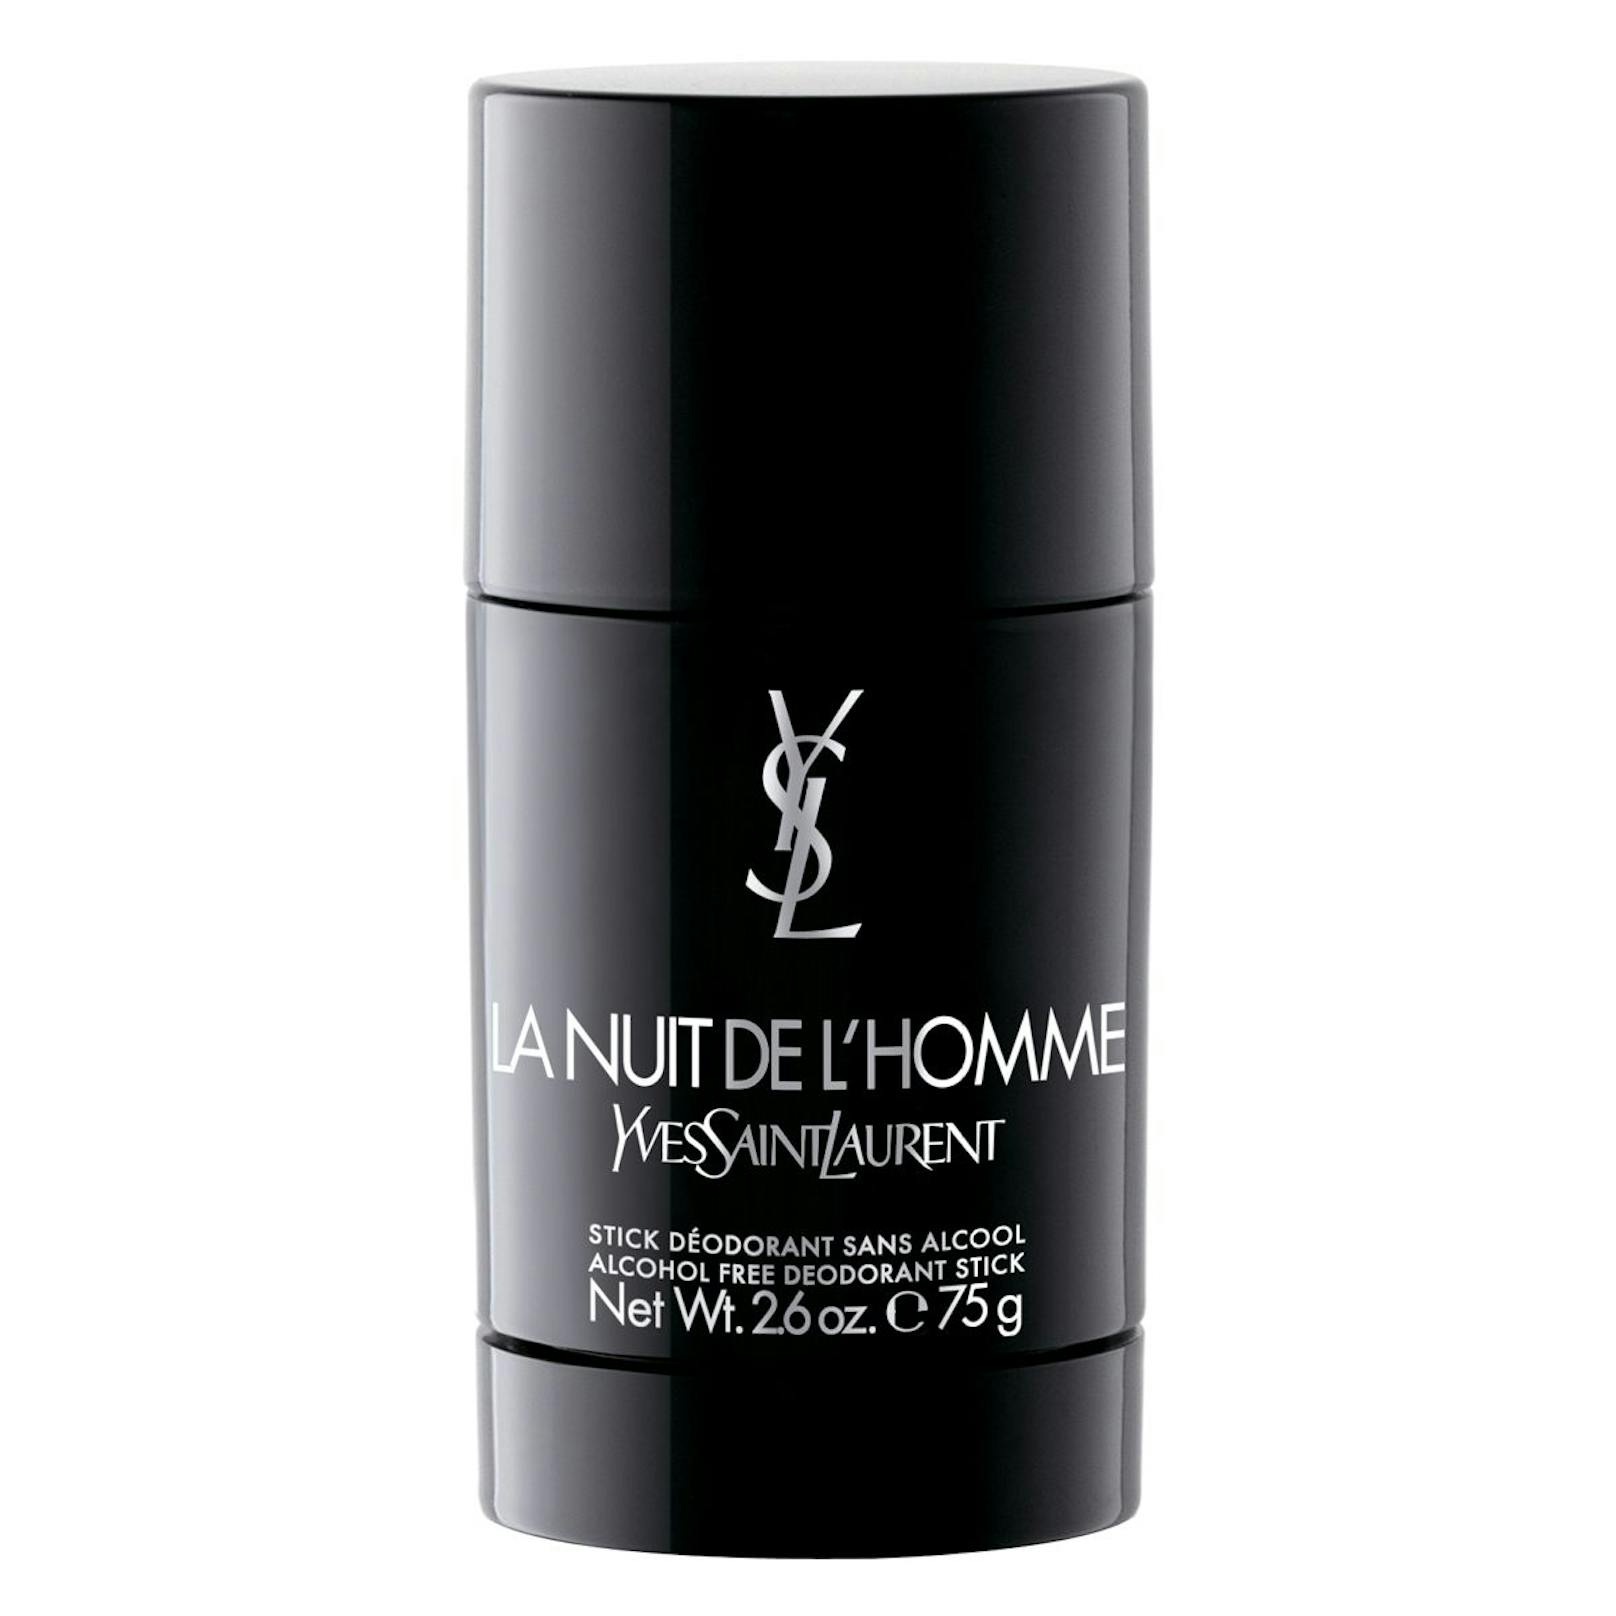 Der Deodorant-Stick vom französischen Modeschöpfer Yves Saint Laurent bietet dir einen zuverlässigen Schutz untertags und erfrischt zugleich. 